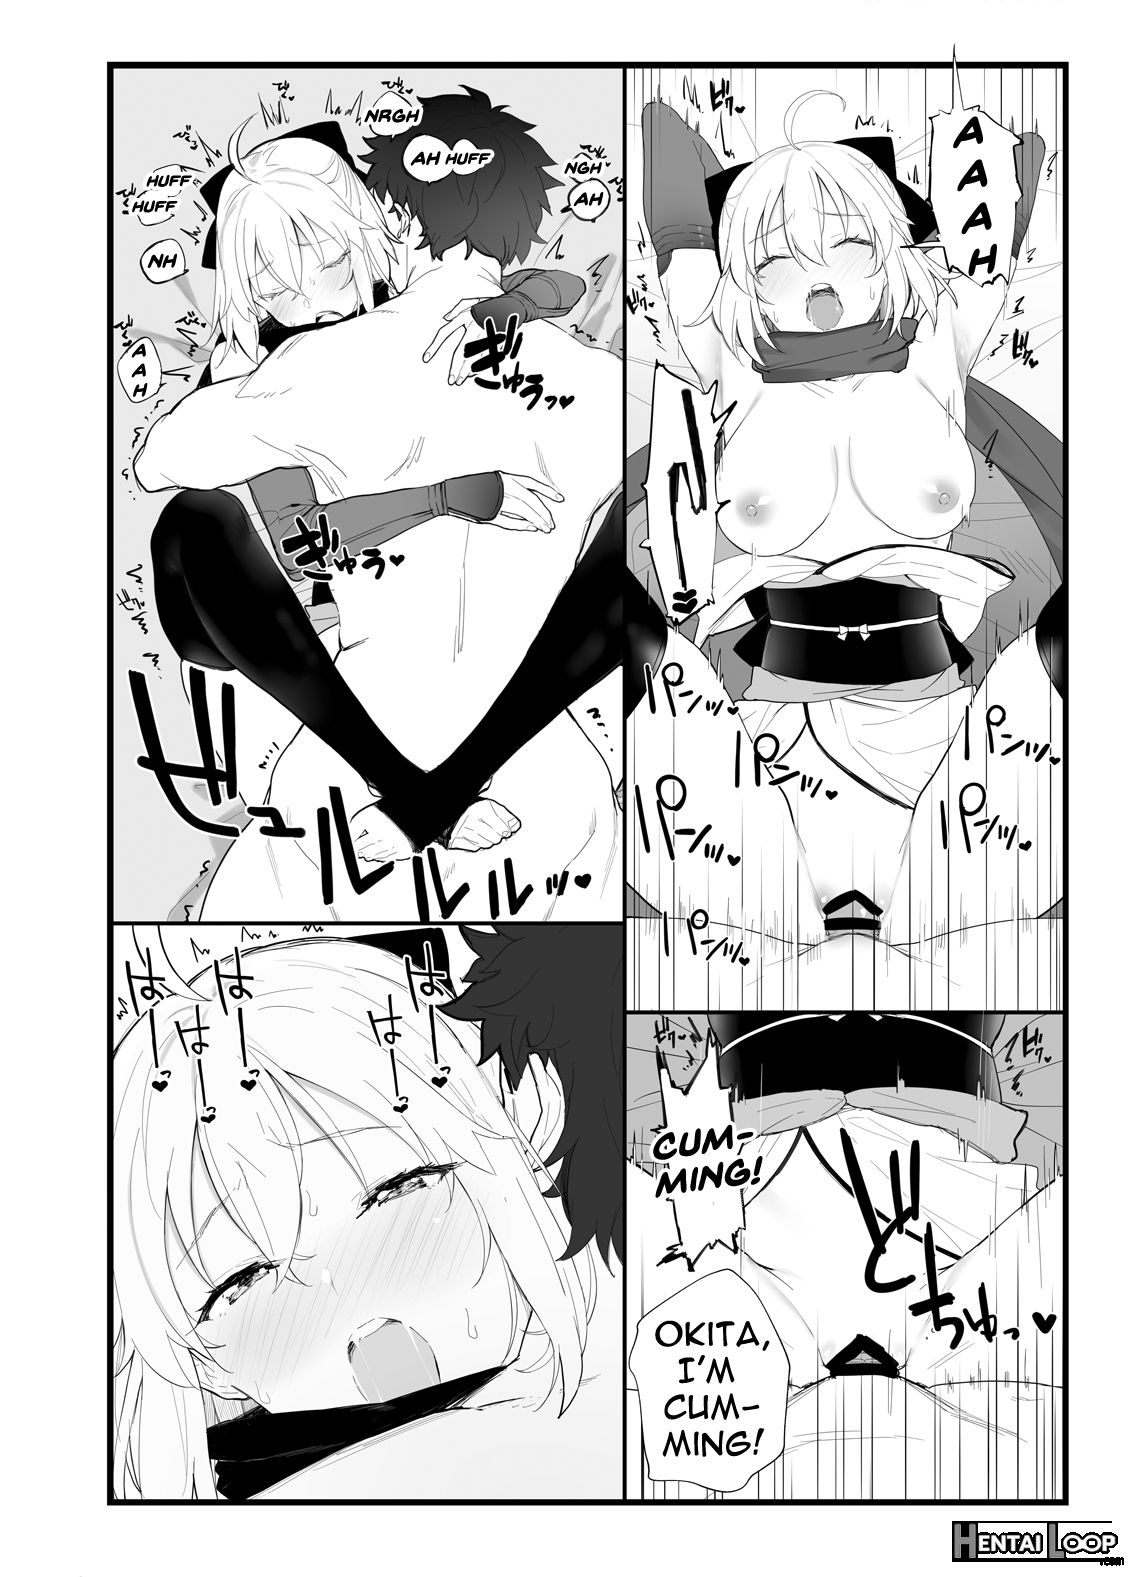 Okita-san's Book page 9